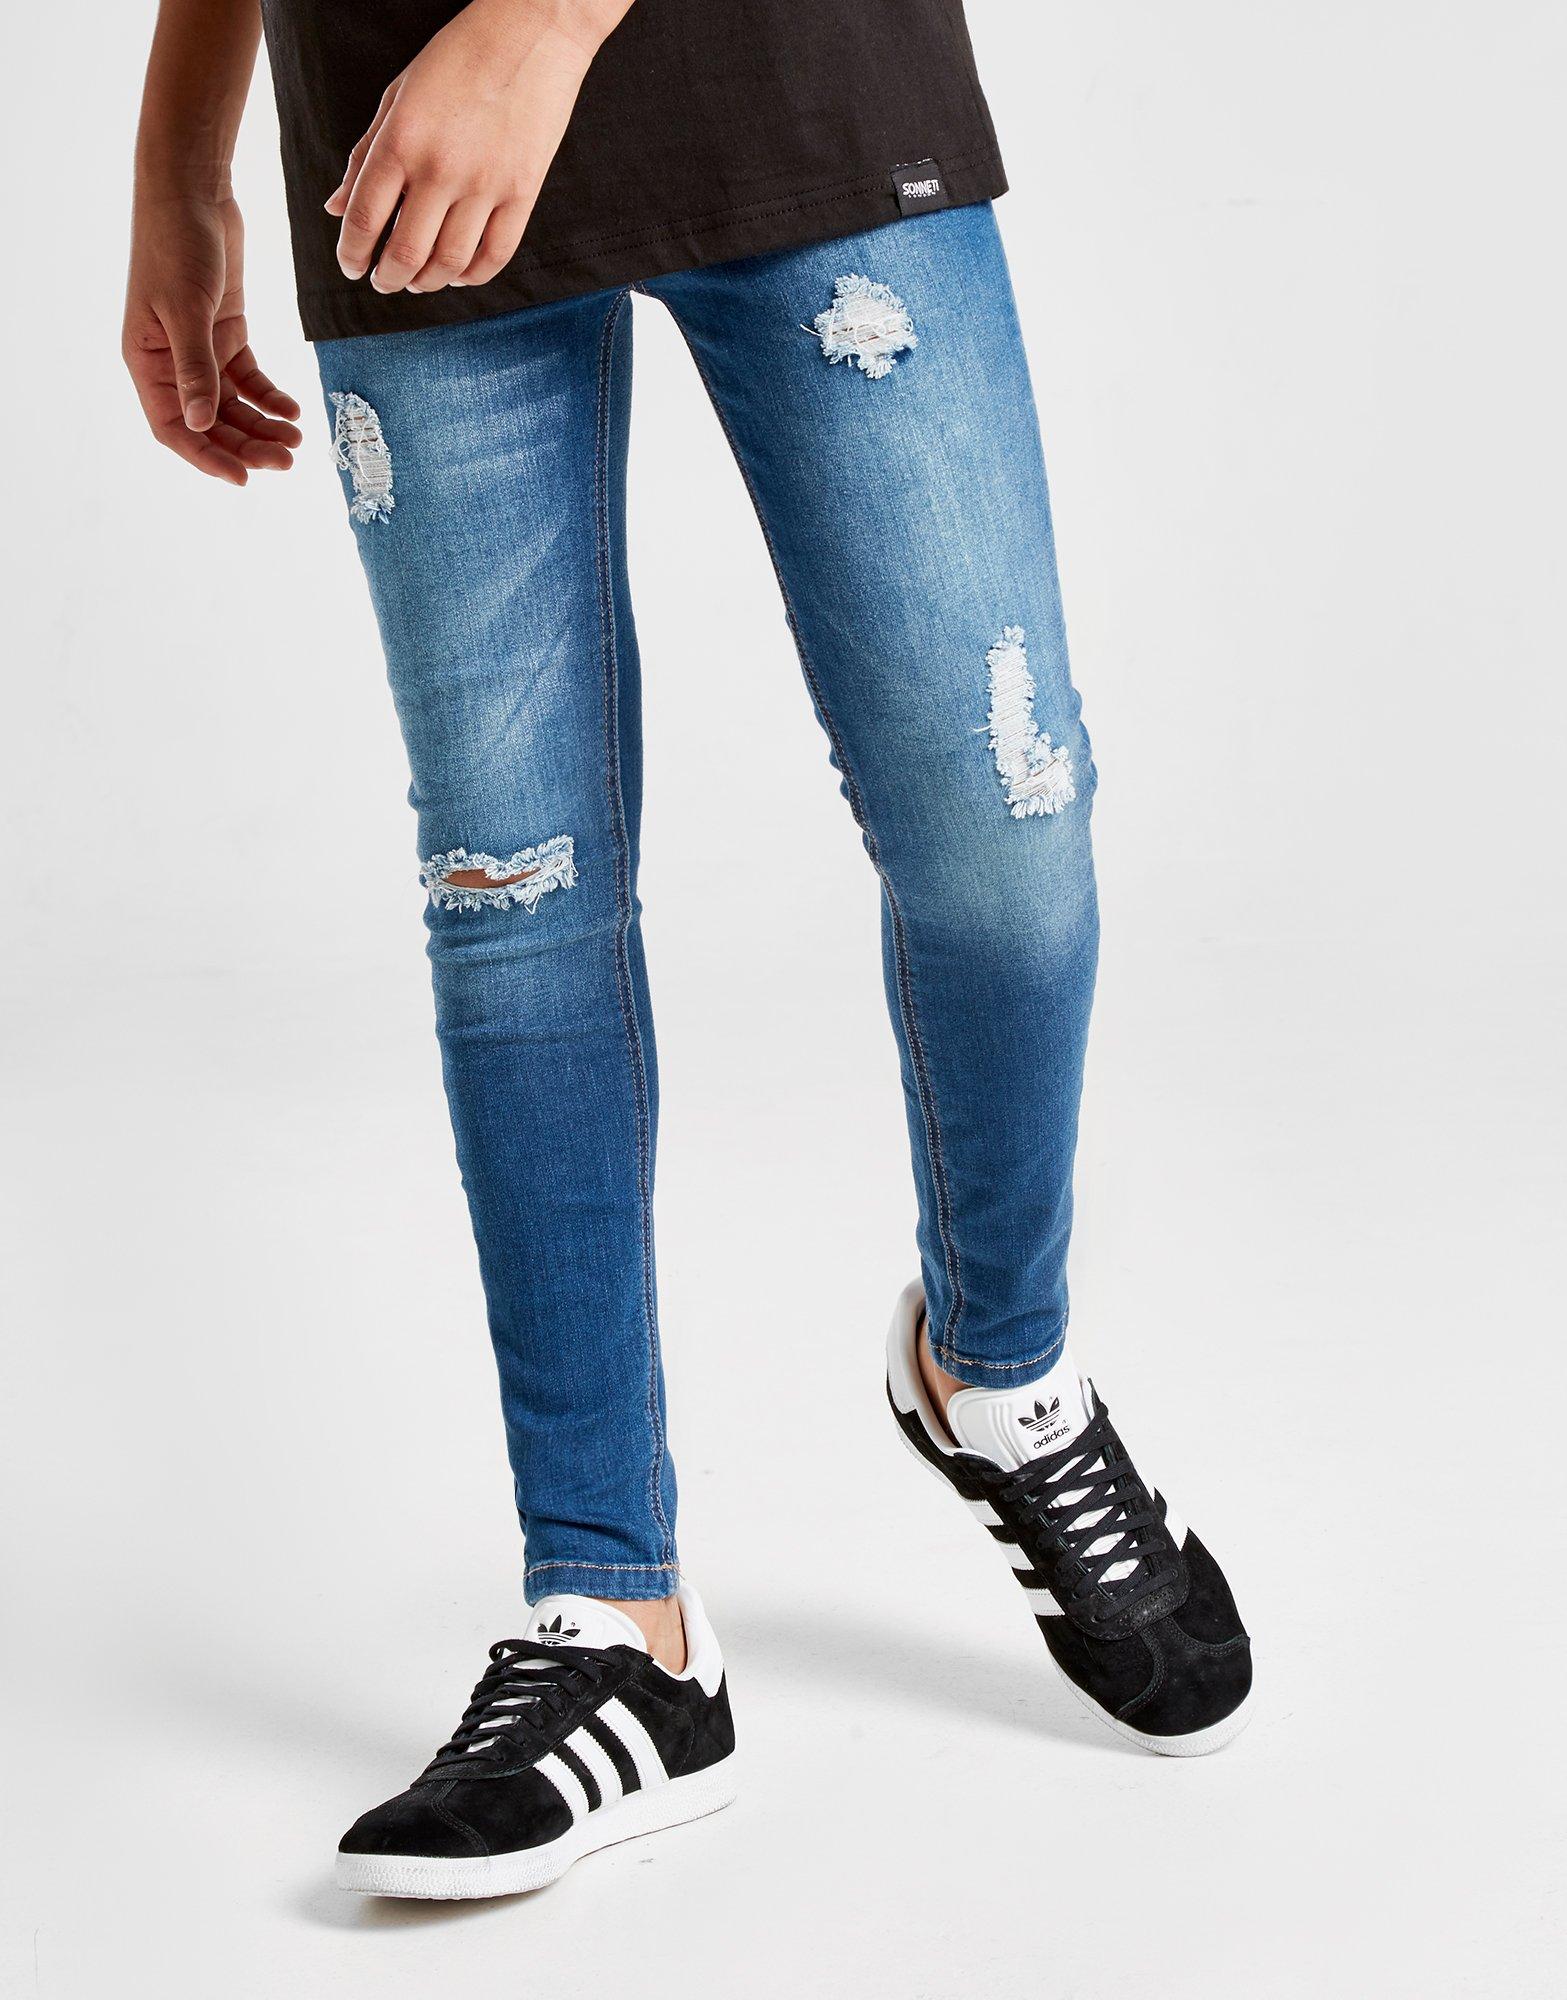 inc stockholm skinny fit jeans